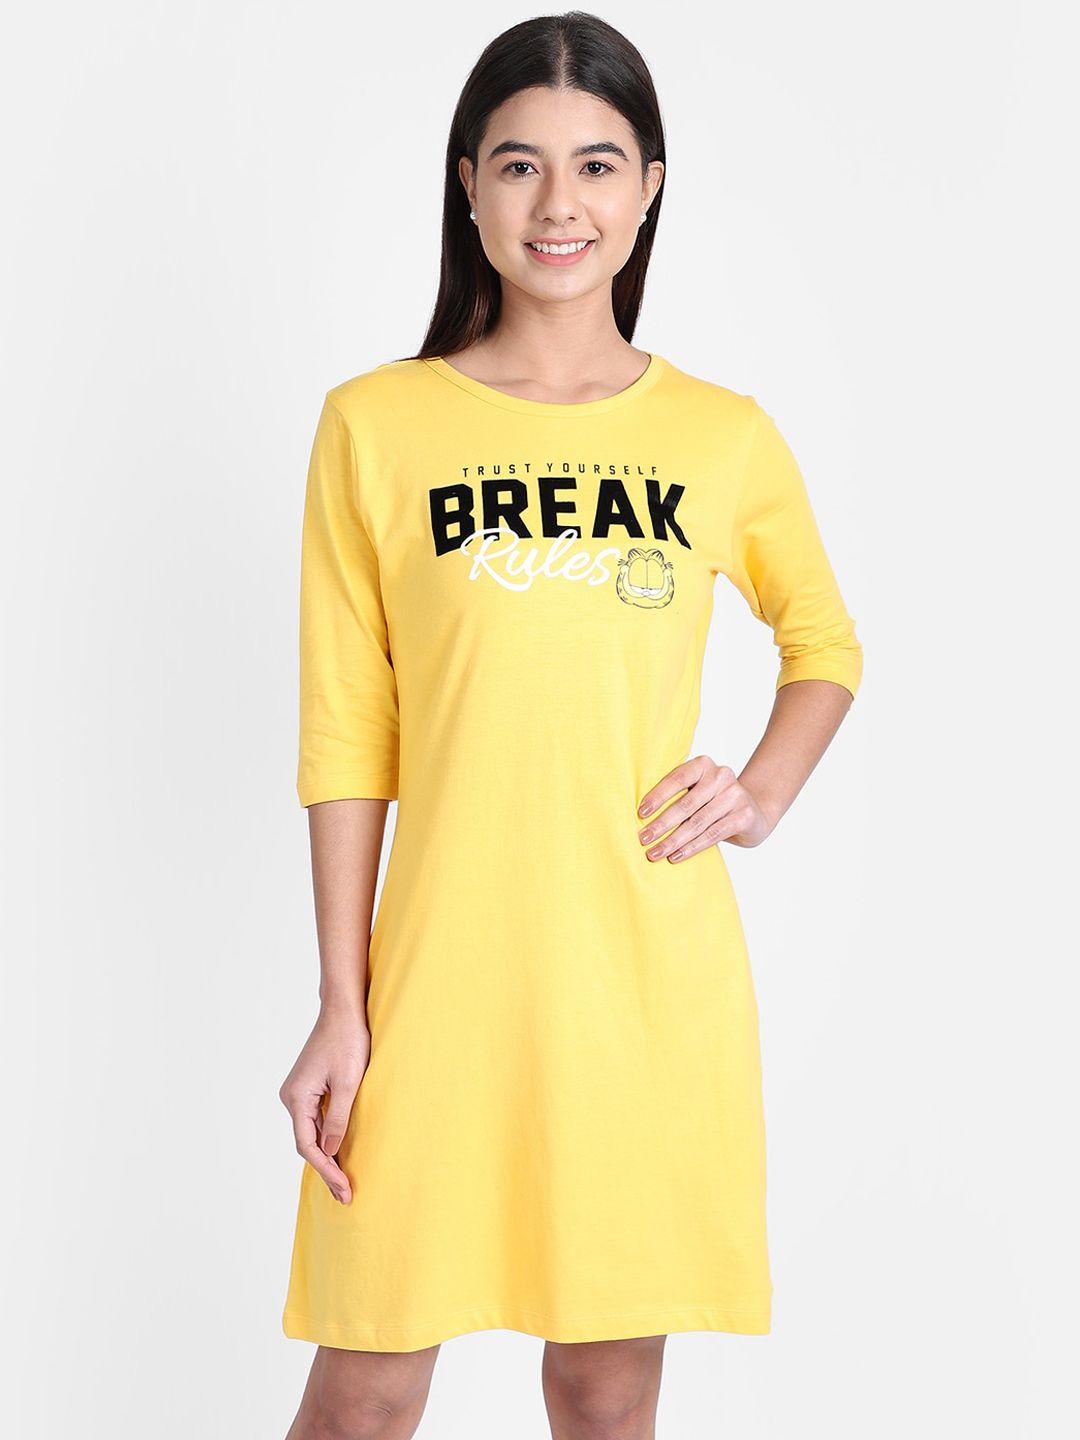 free authority garfield print yellow dress for women